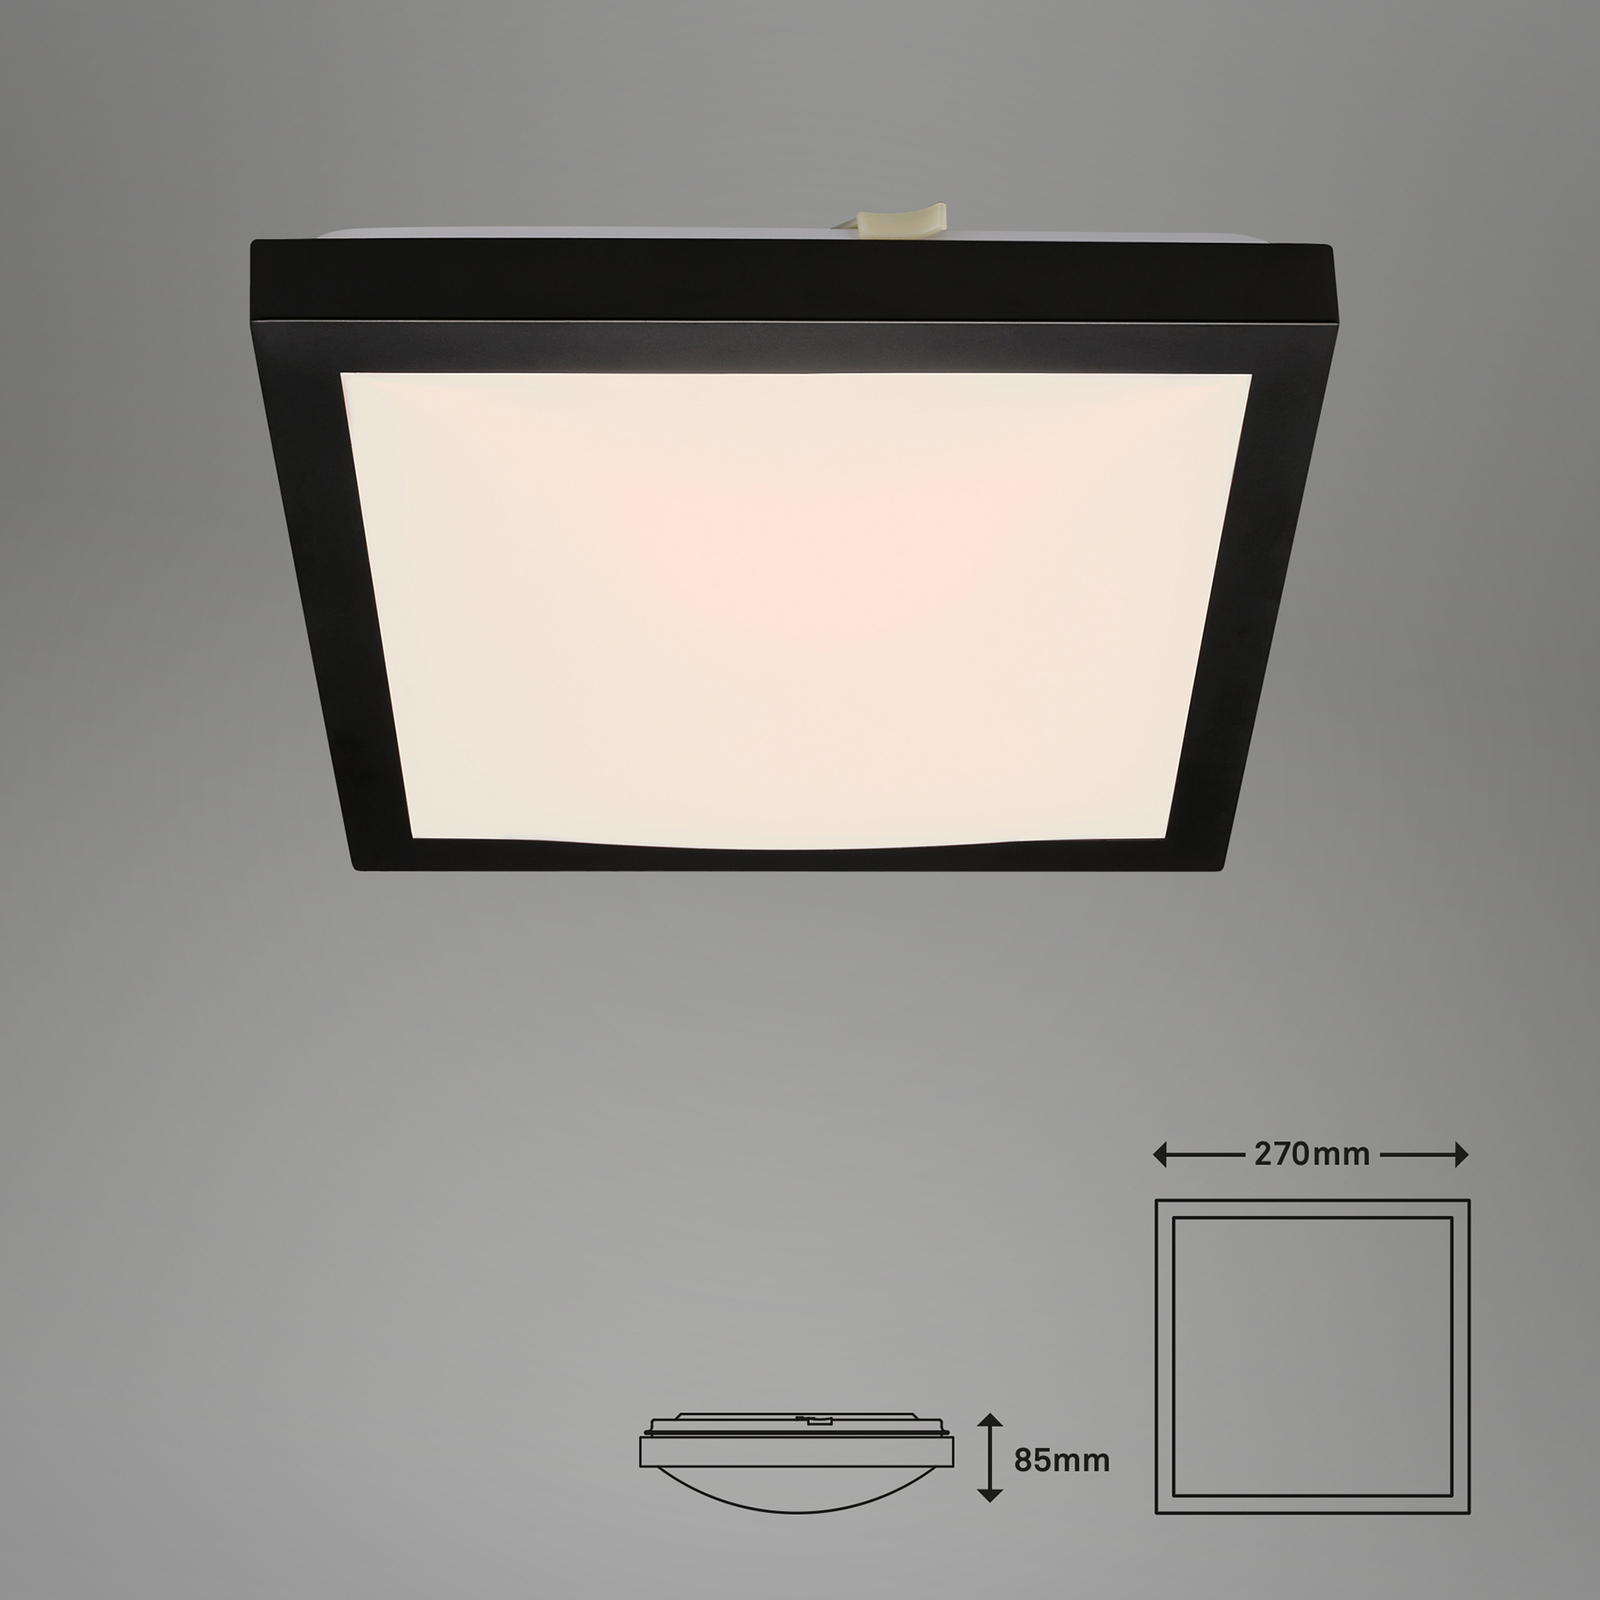 LED lubinis šviestuvas "Fledo", 3 000 K, juoda/balta